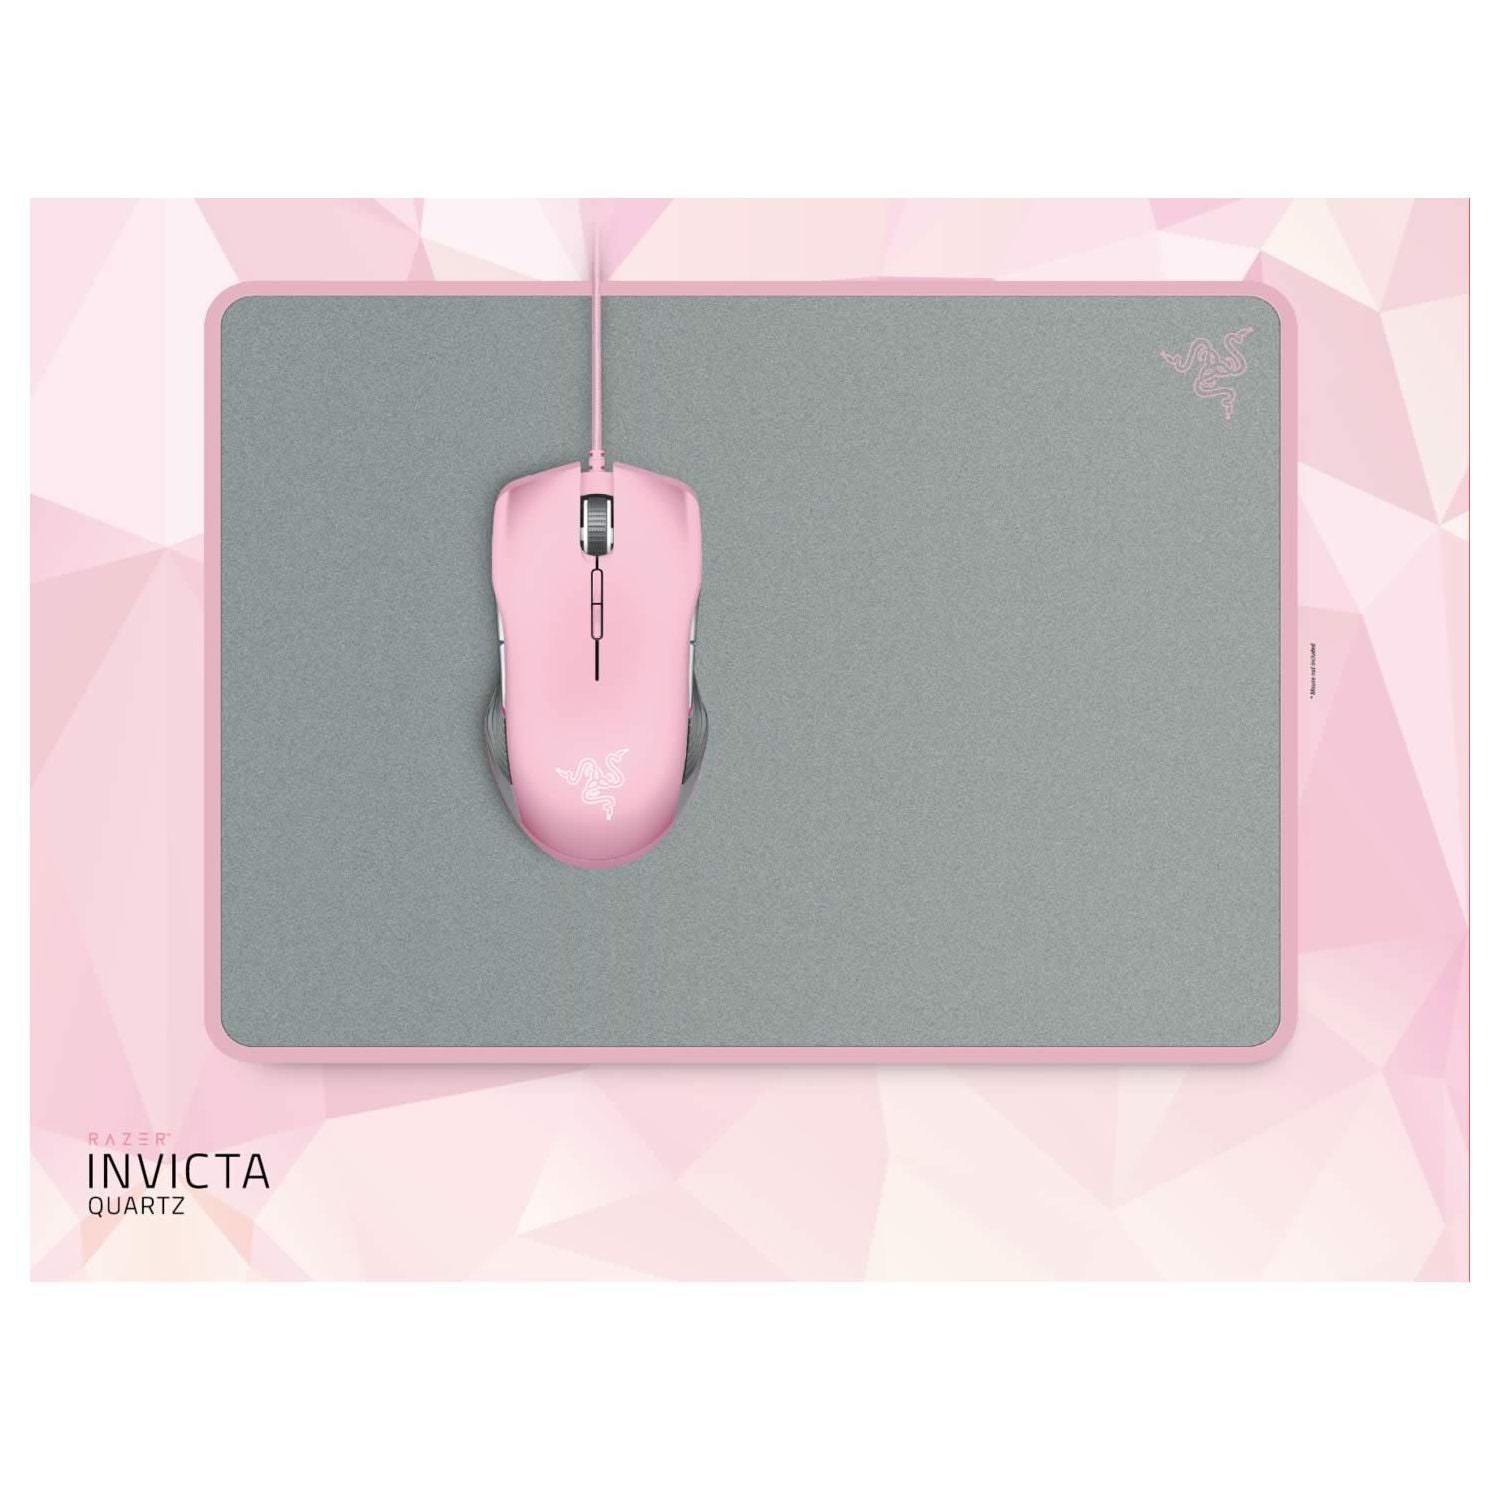 Razer Invicta Gaming Mouse Mat Quartz Edition